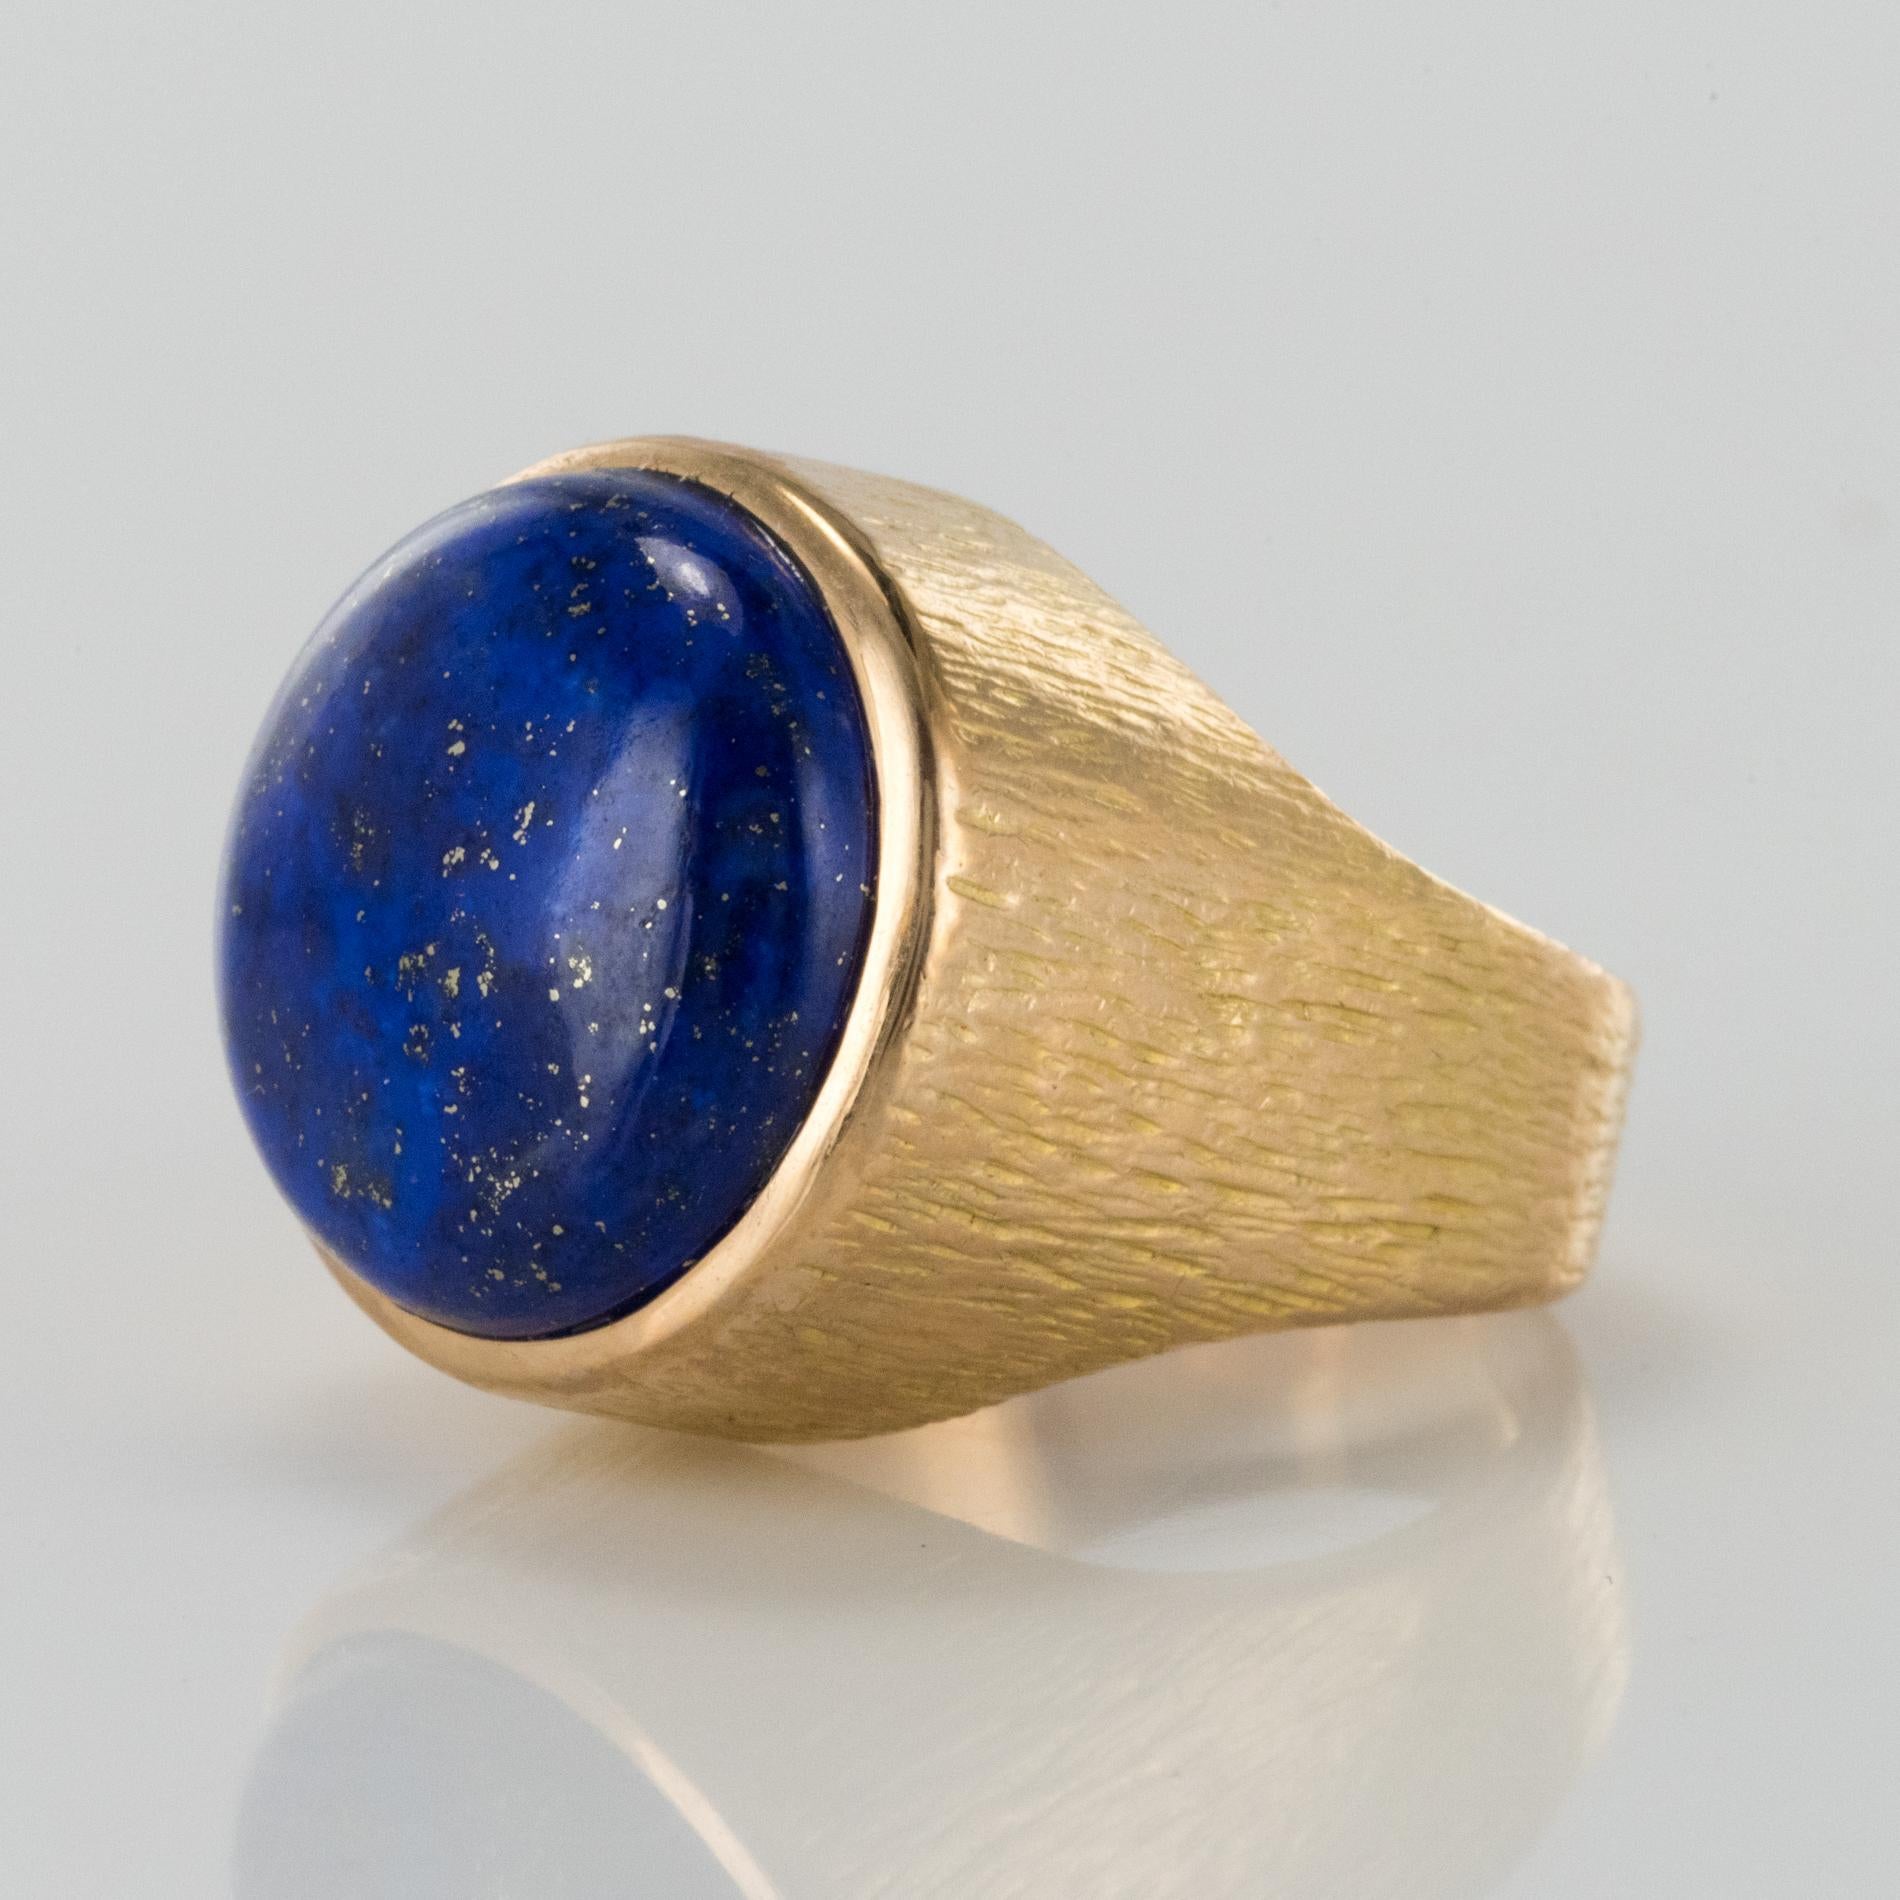 Retro 1950s Vintage Lapis Lazuli Chiseled 18 Karat Yellow Gold Signet Ring